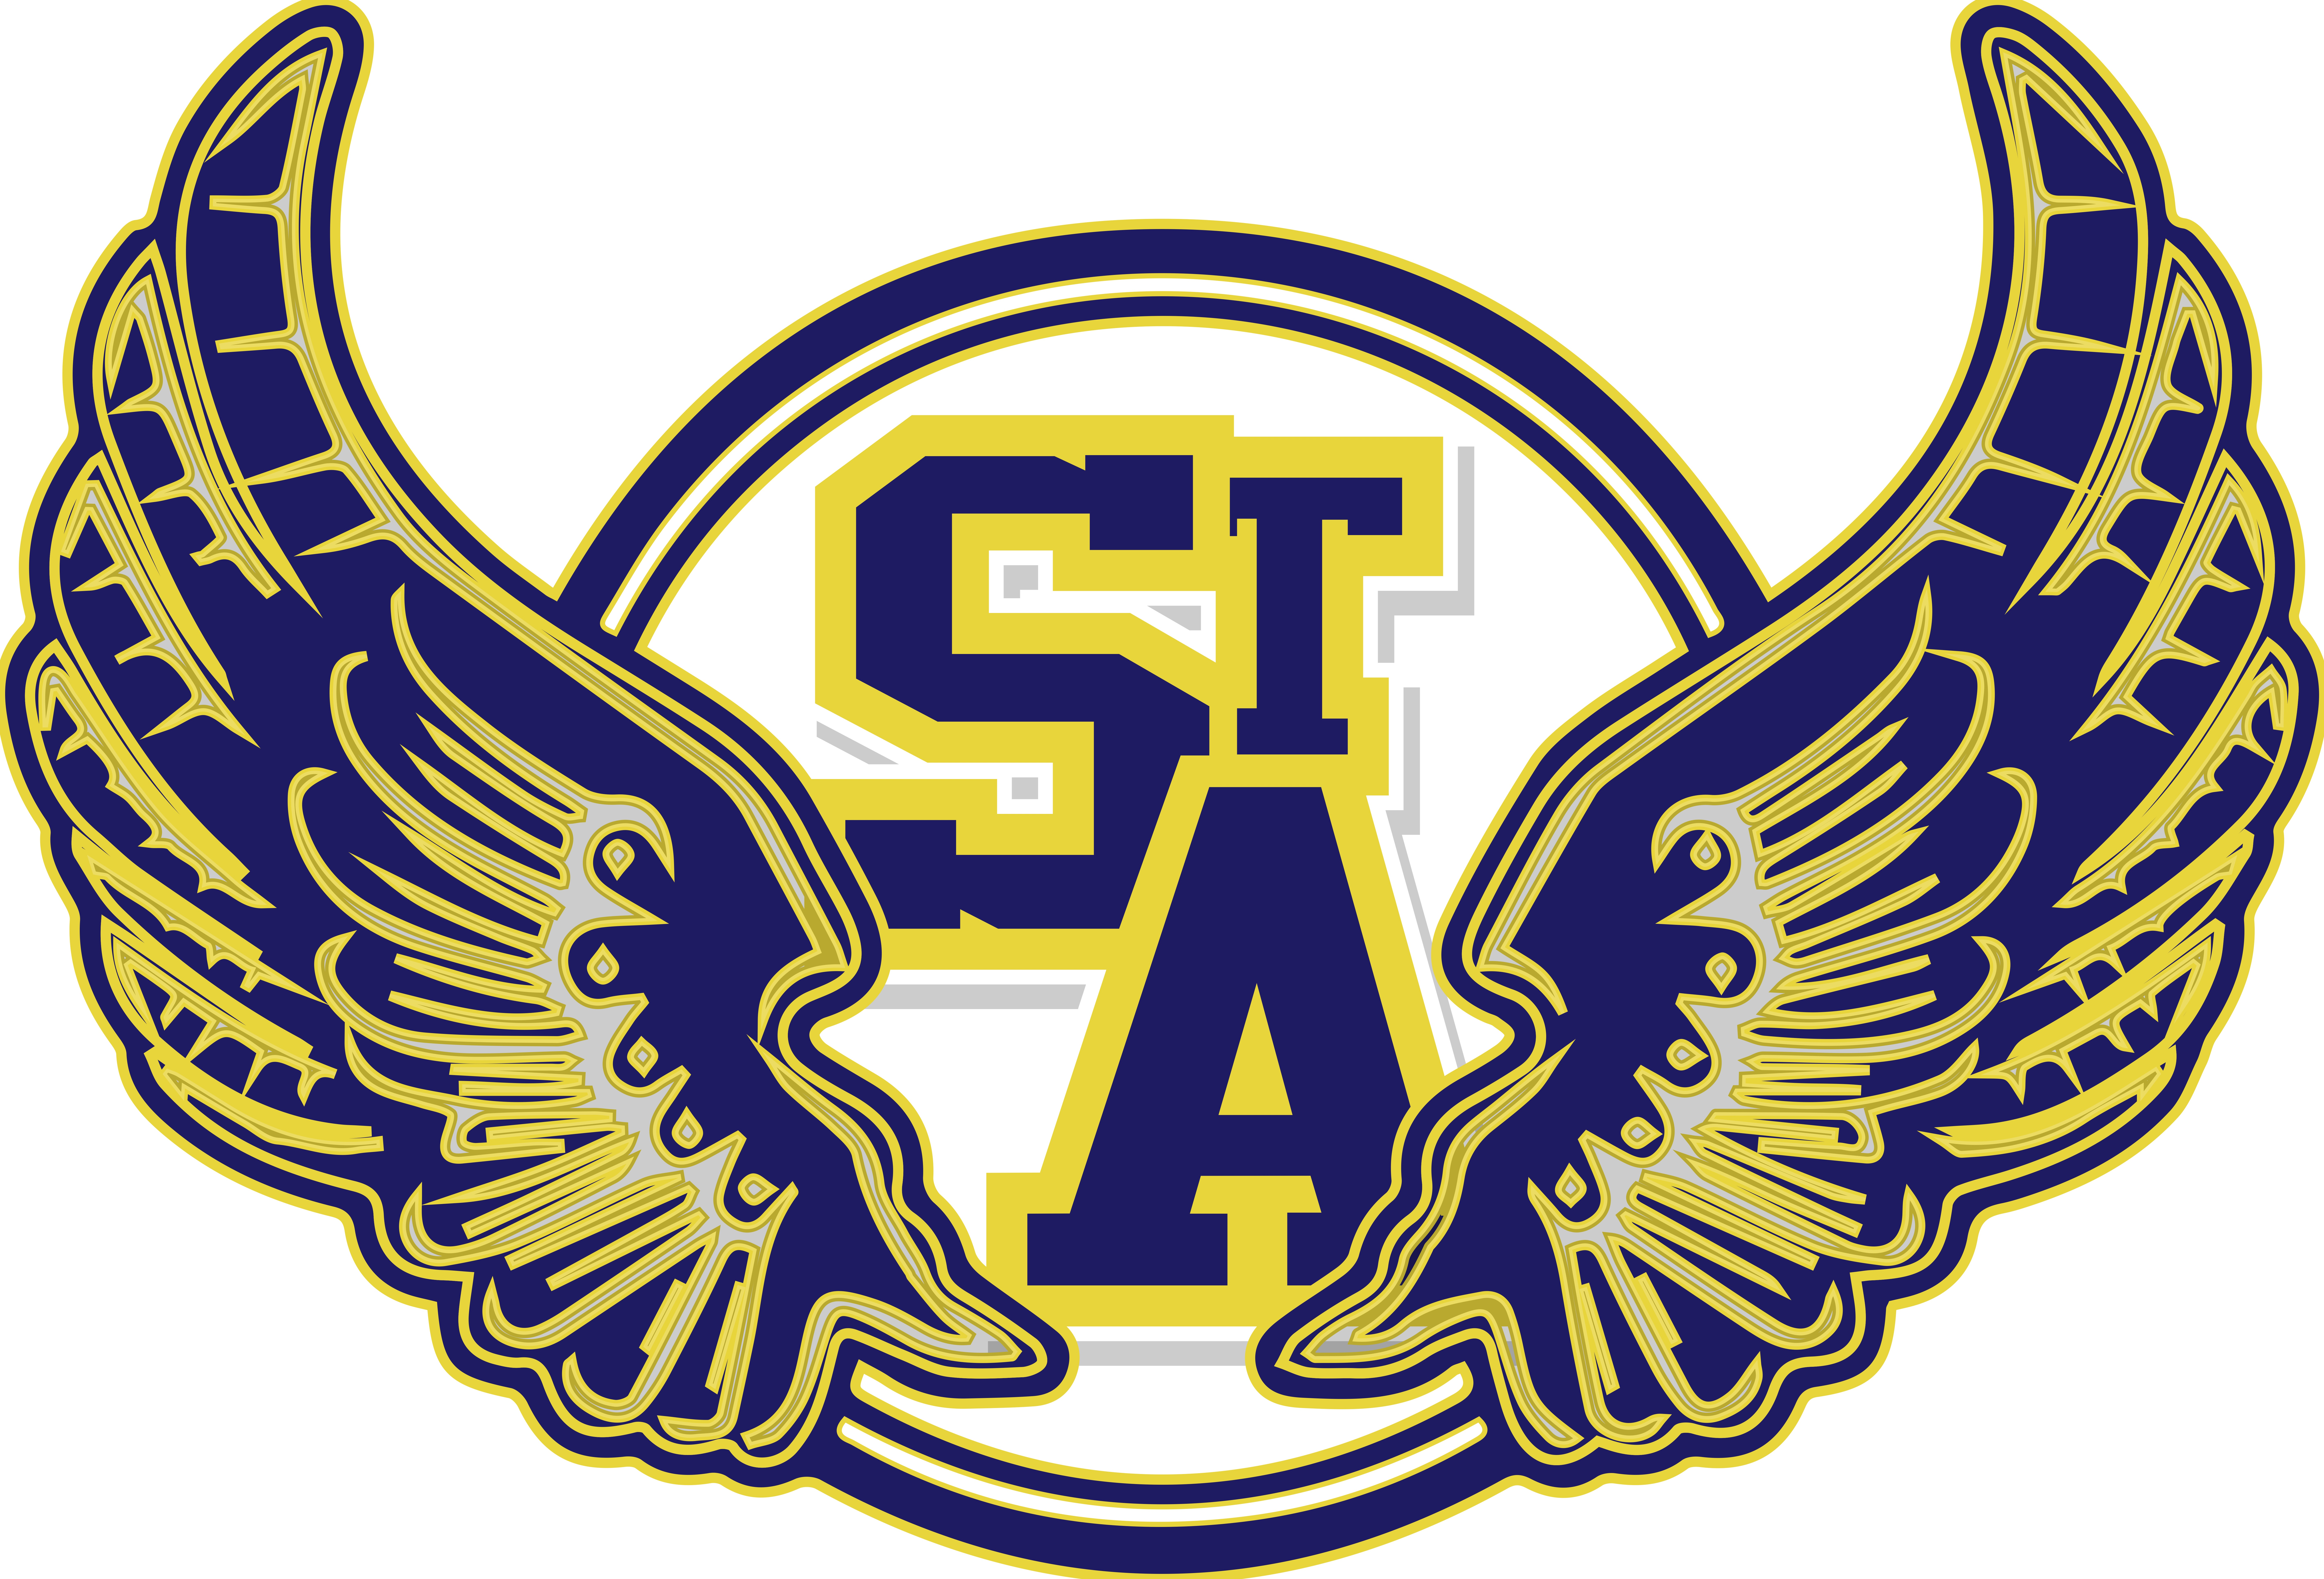 Saints Logo